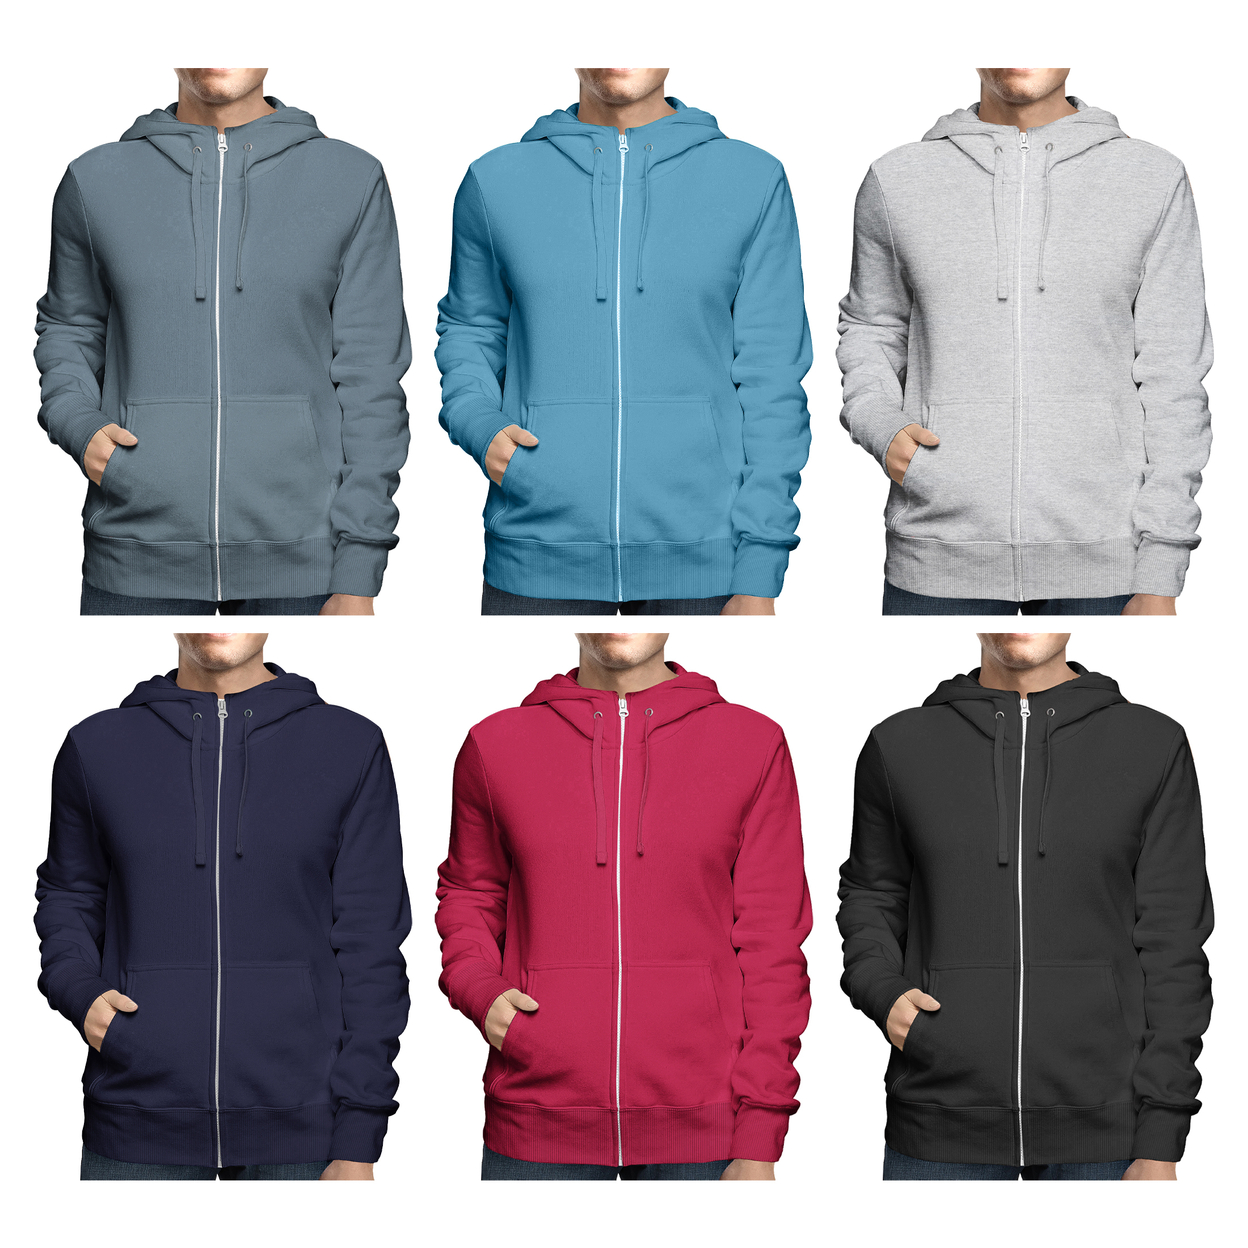 Men's Winter Warm Cozy Full Zip-Up Fleece Lined Soft Hoodie Sweatshirt - Navy, Xx-large